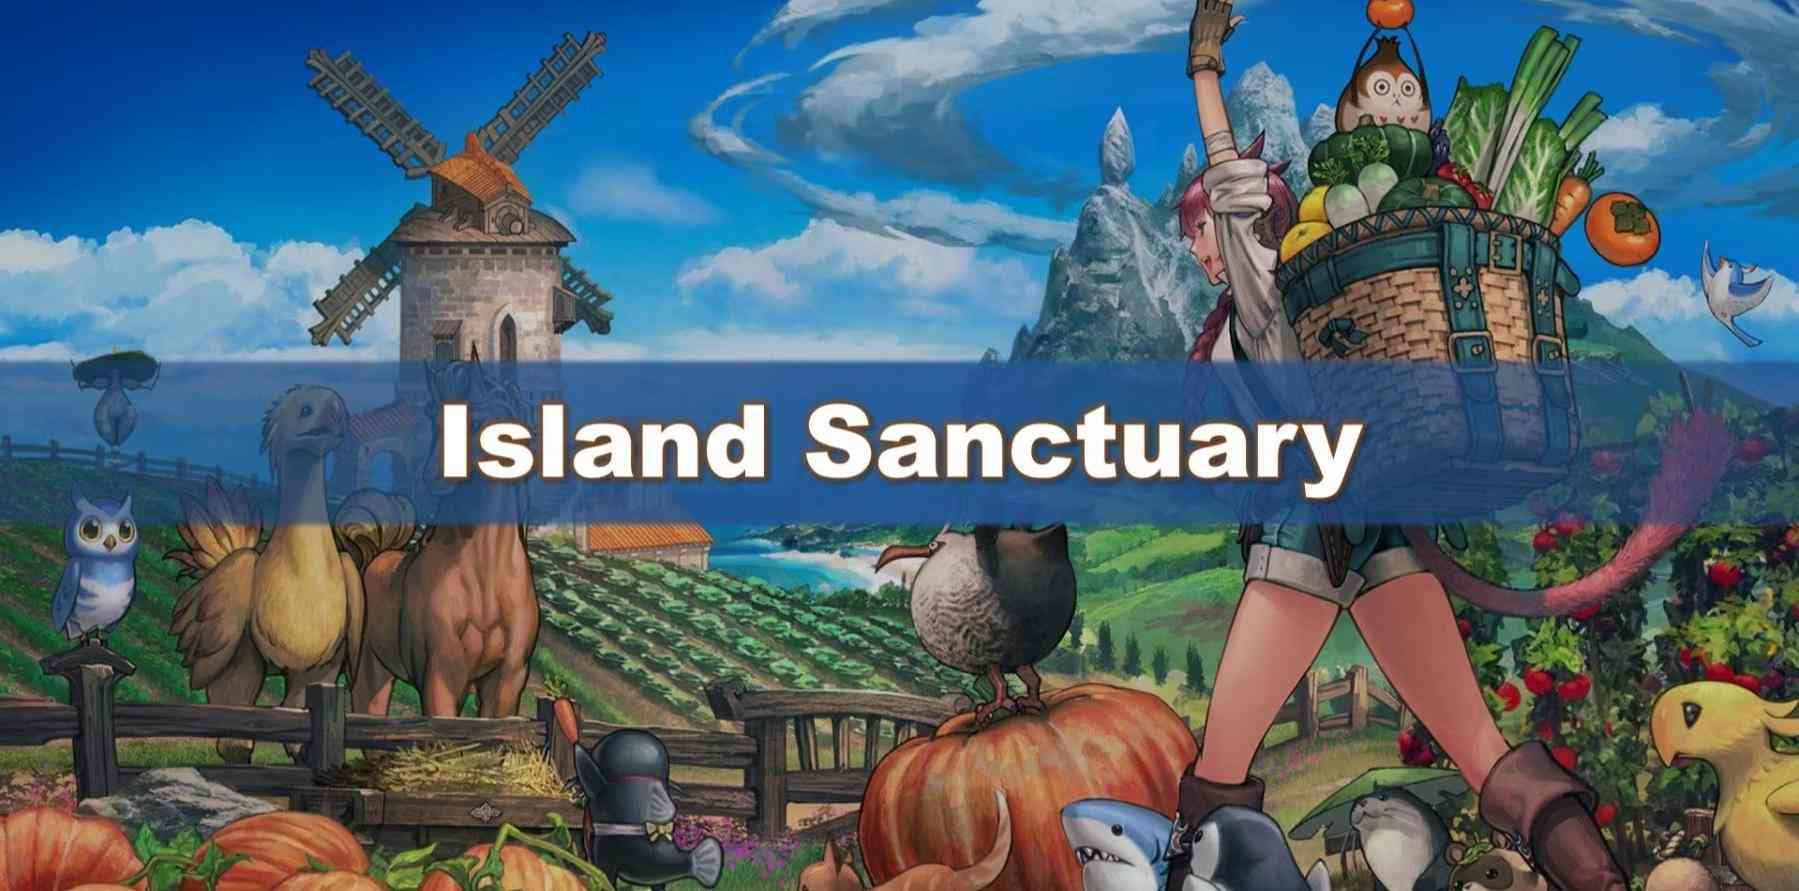 Final Fantasy 14 tiết lộ chi tiết đầu tiên về cách chơi của Island Sanctuary